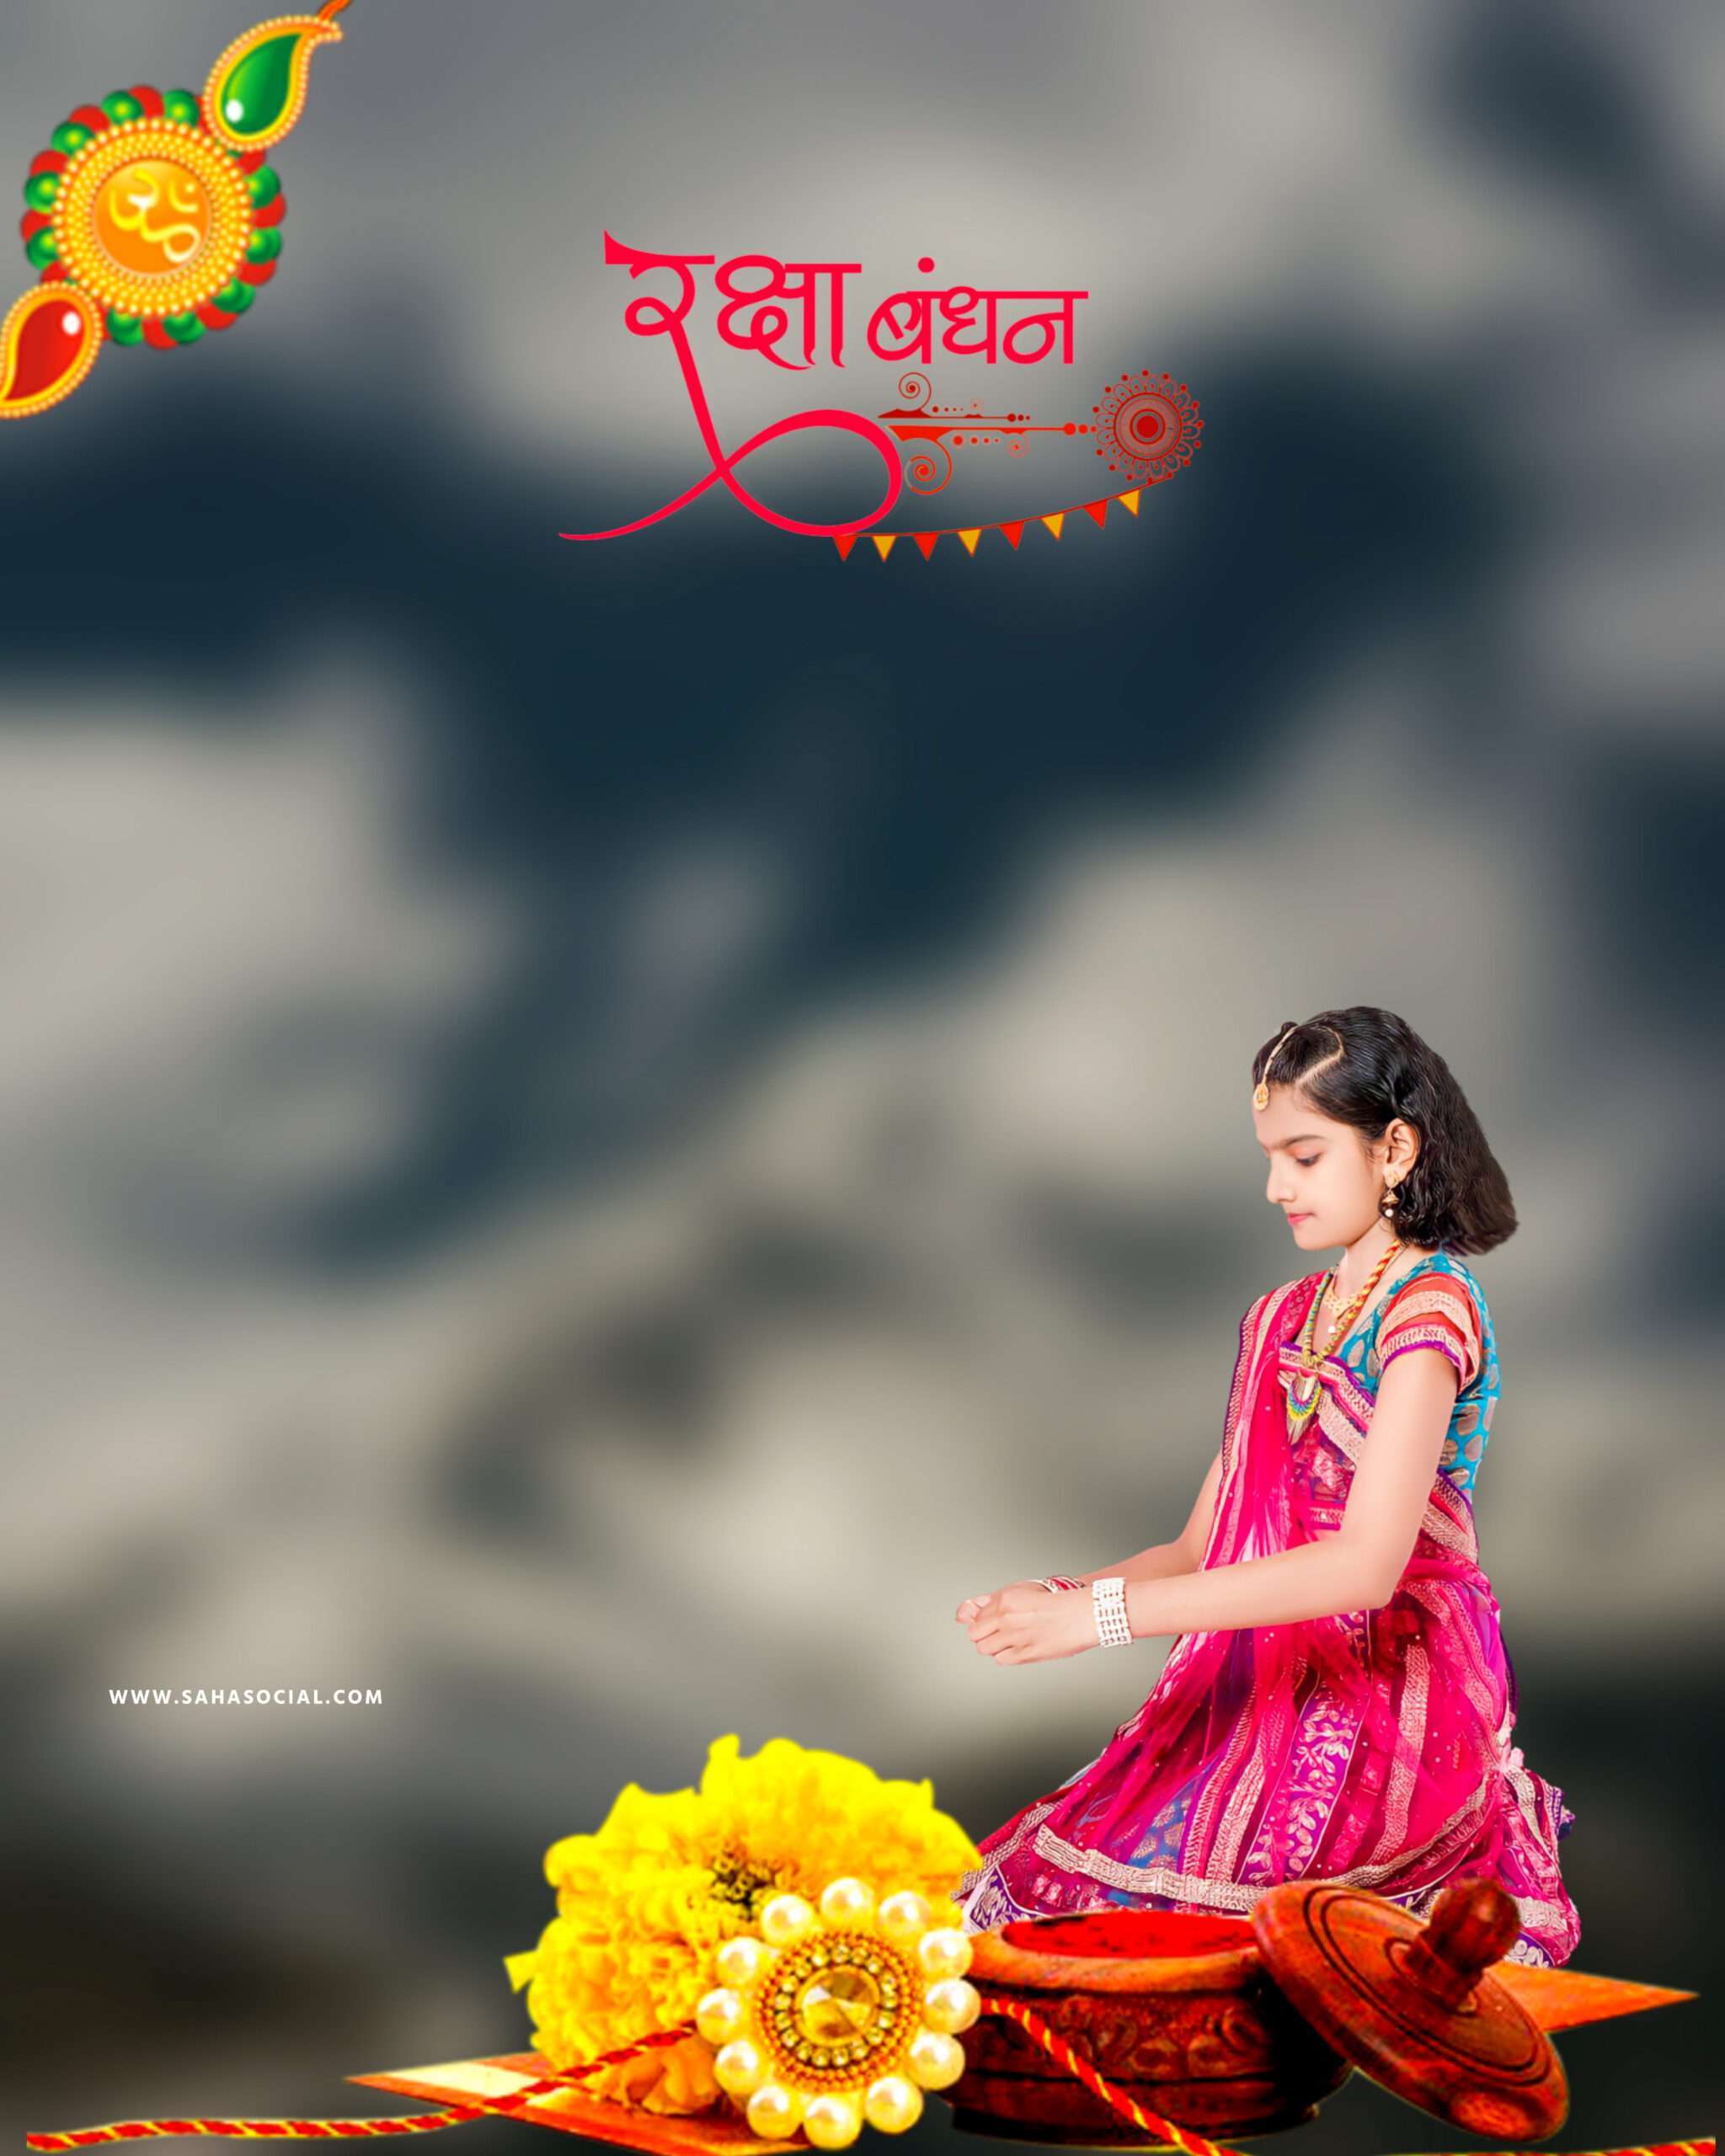 Raksha bandhan Photo Editing background